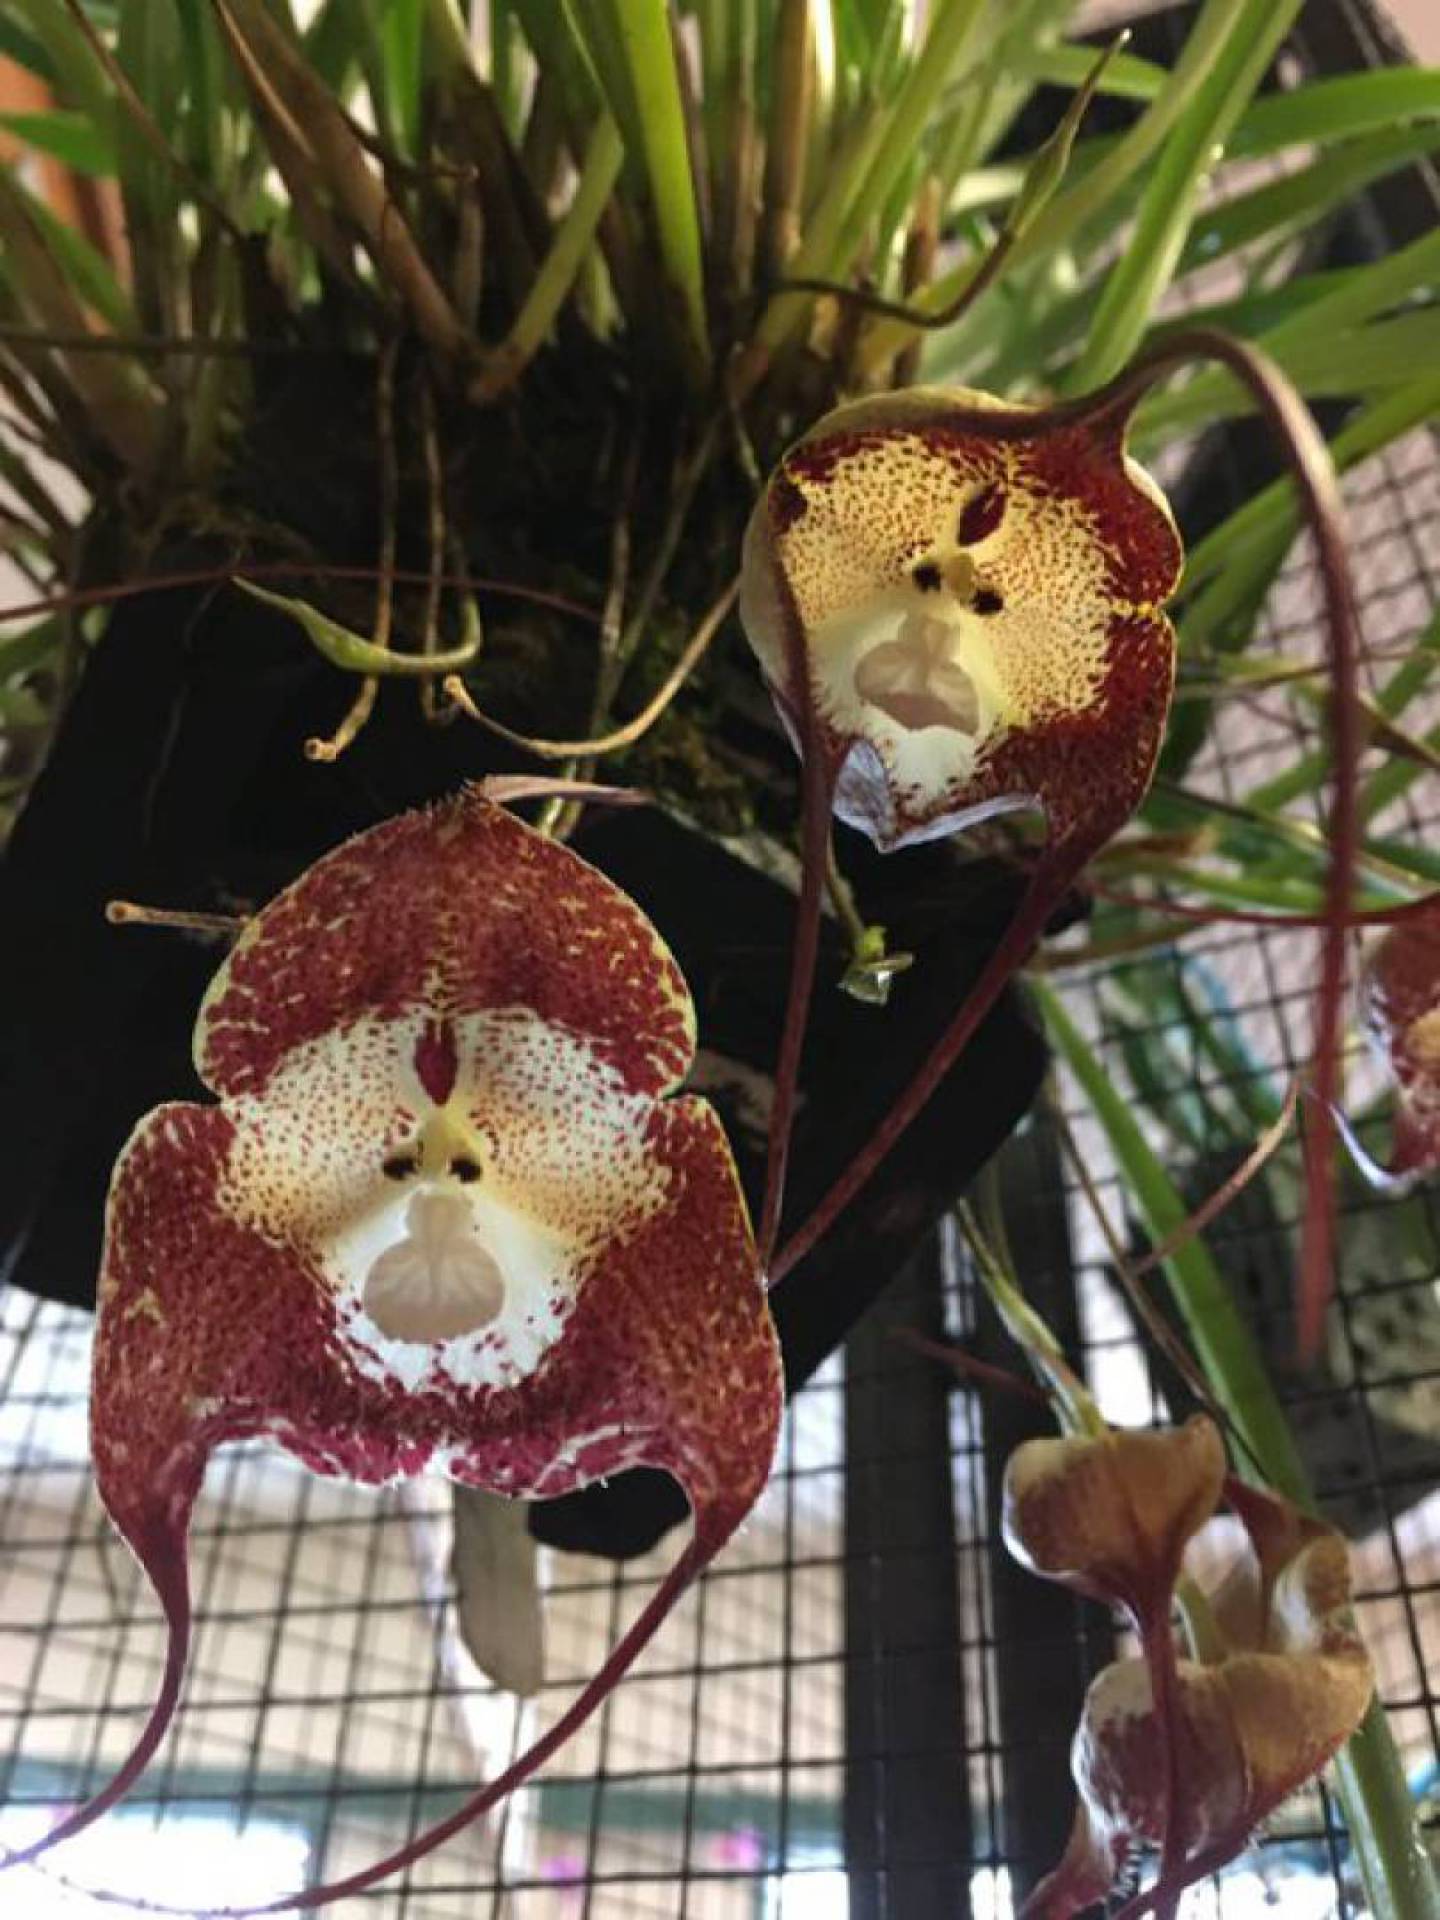 Planta com rosto de macaco? Entenda o mistério por trás da orquídea Dracula  | Mundo e Ciência | O Dia